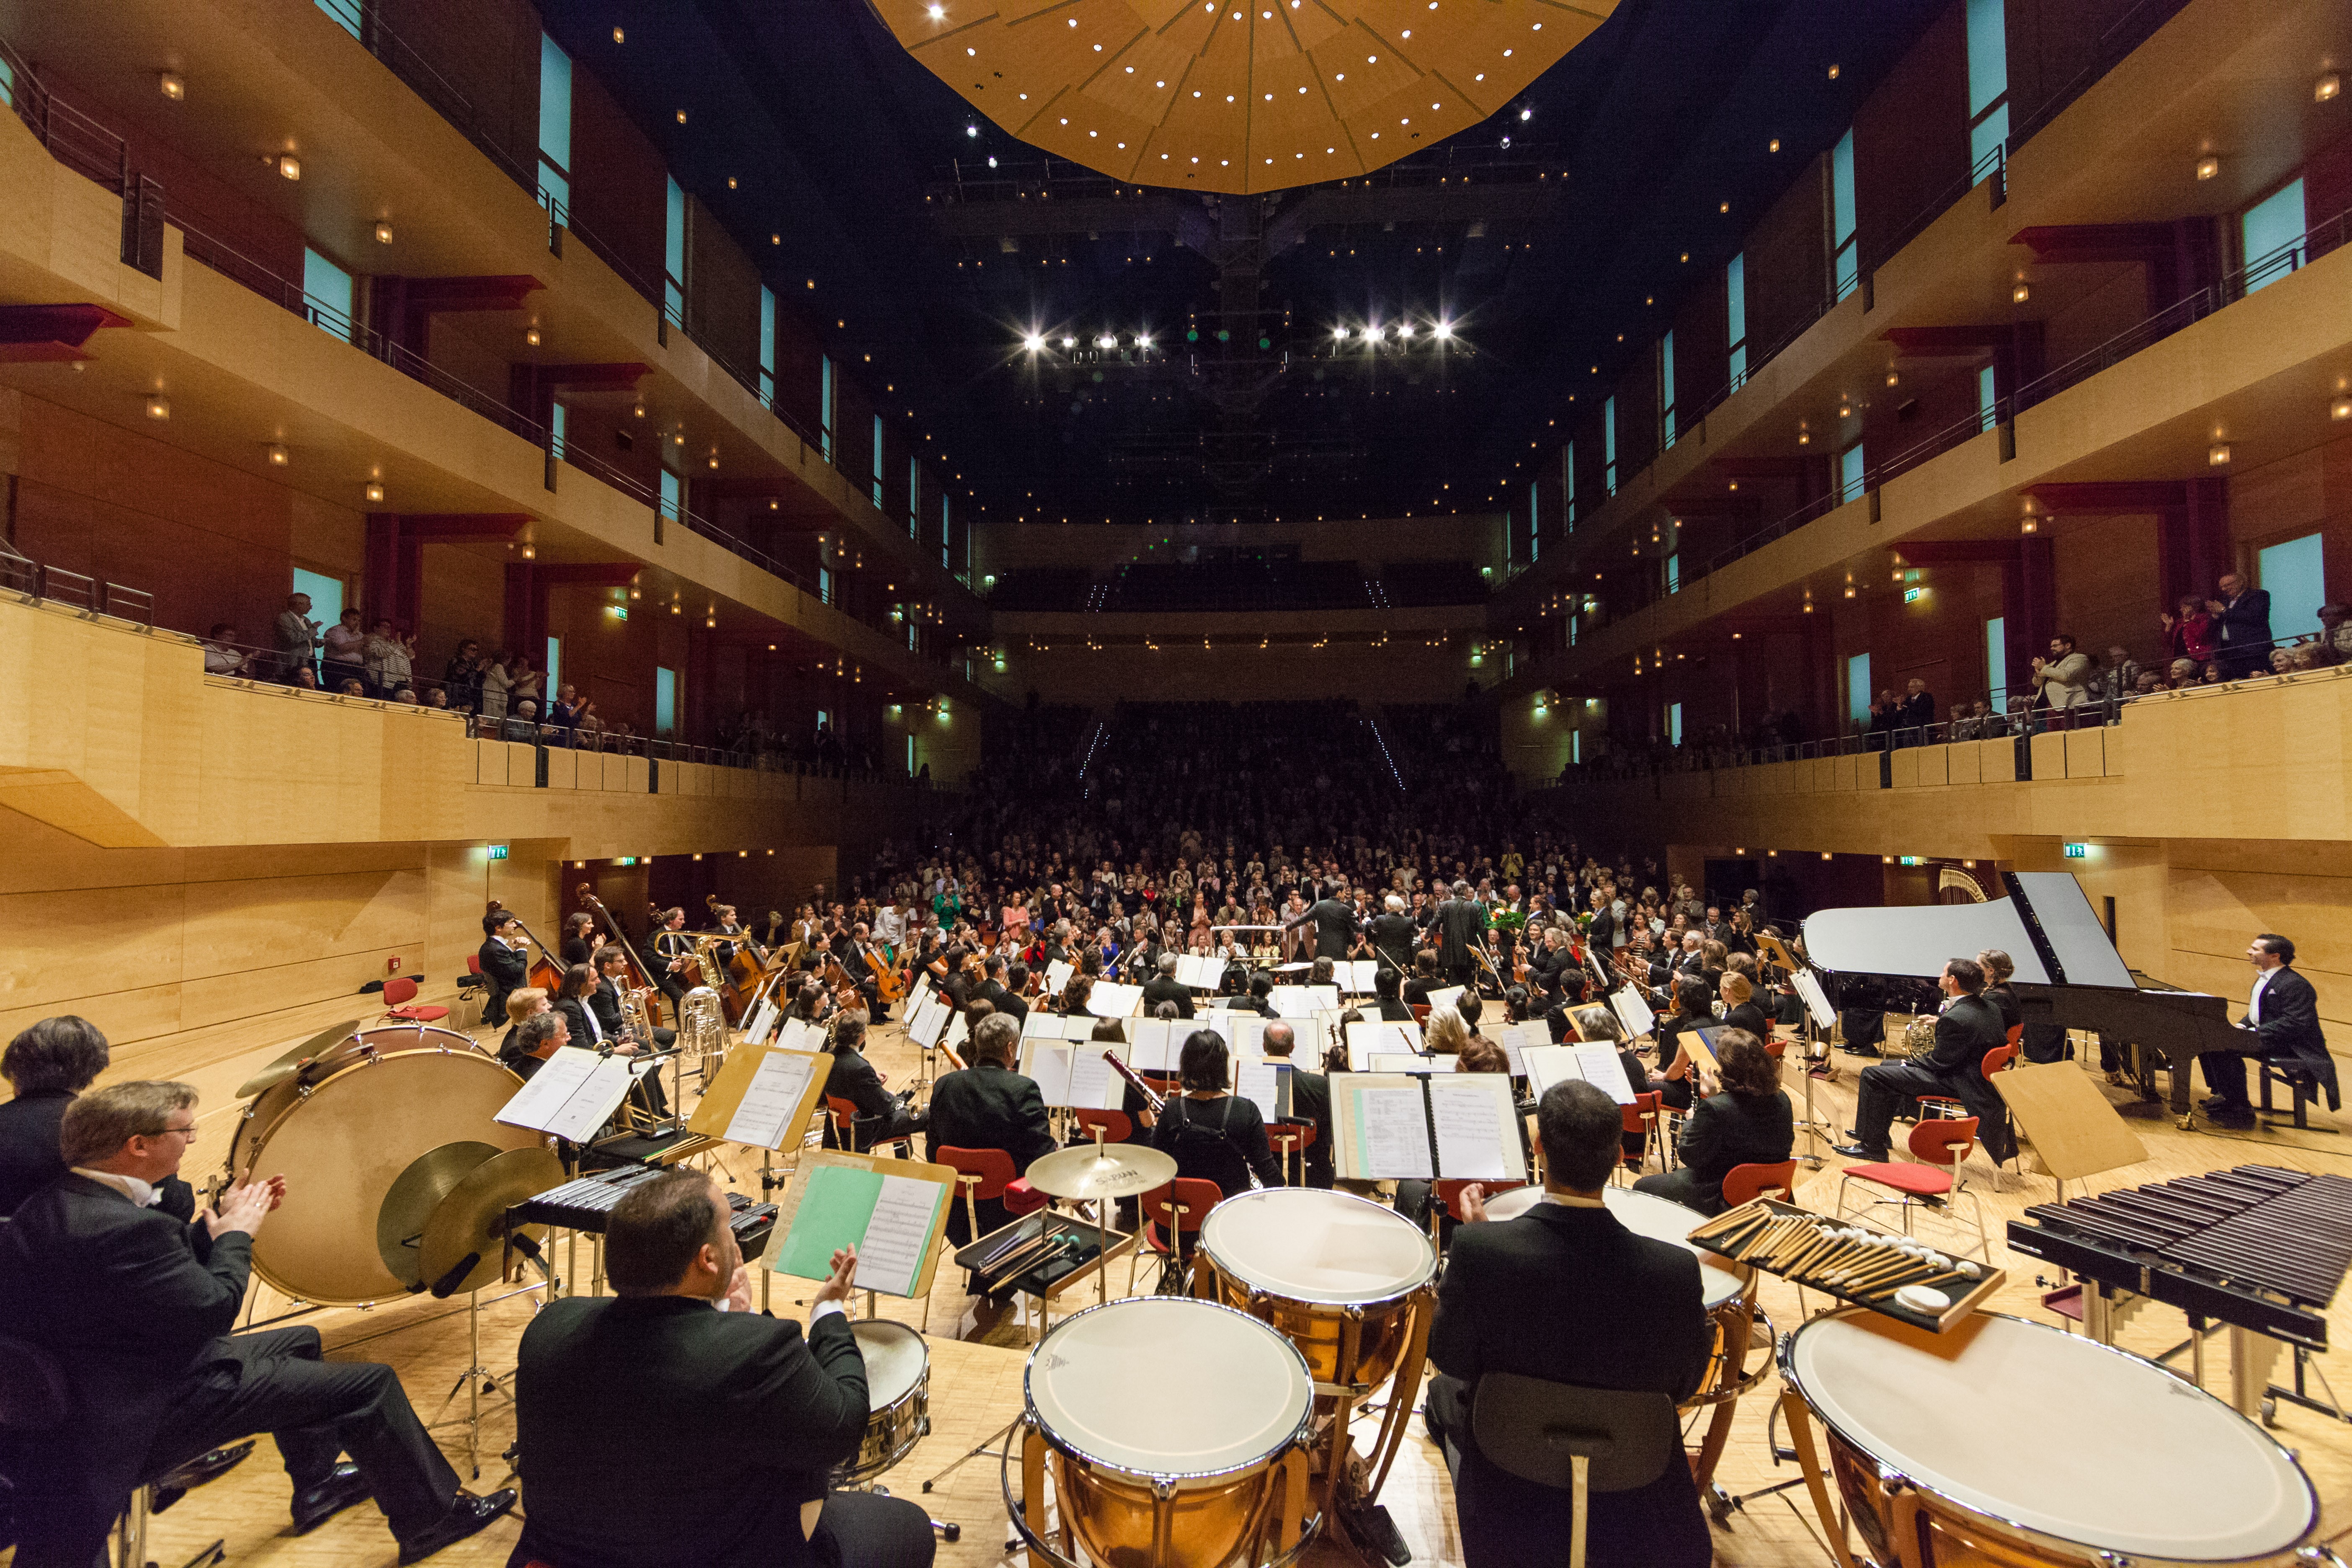 Vue du Philharmonie de Baden-Baden en plein concert. La photo est prise à l'arrière du philharmonie. Les musiciens sont de dos et le public nous fait face.